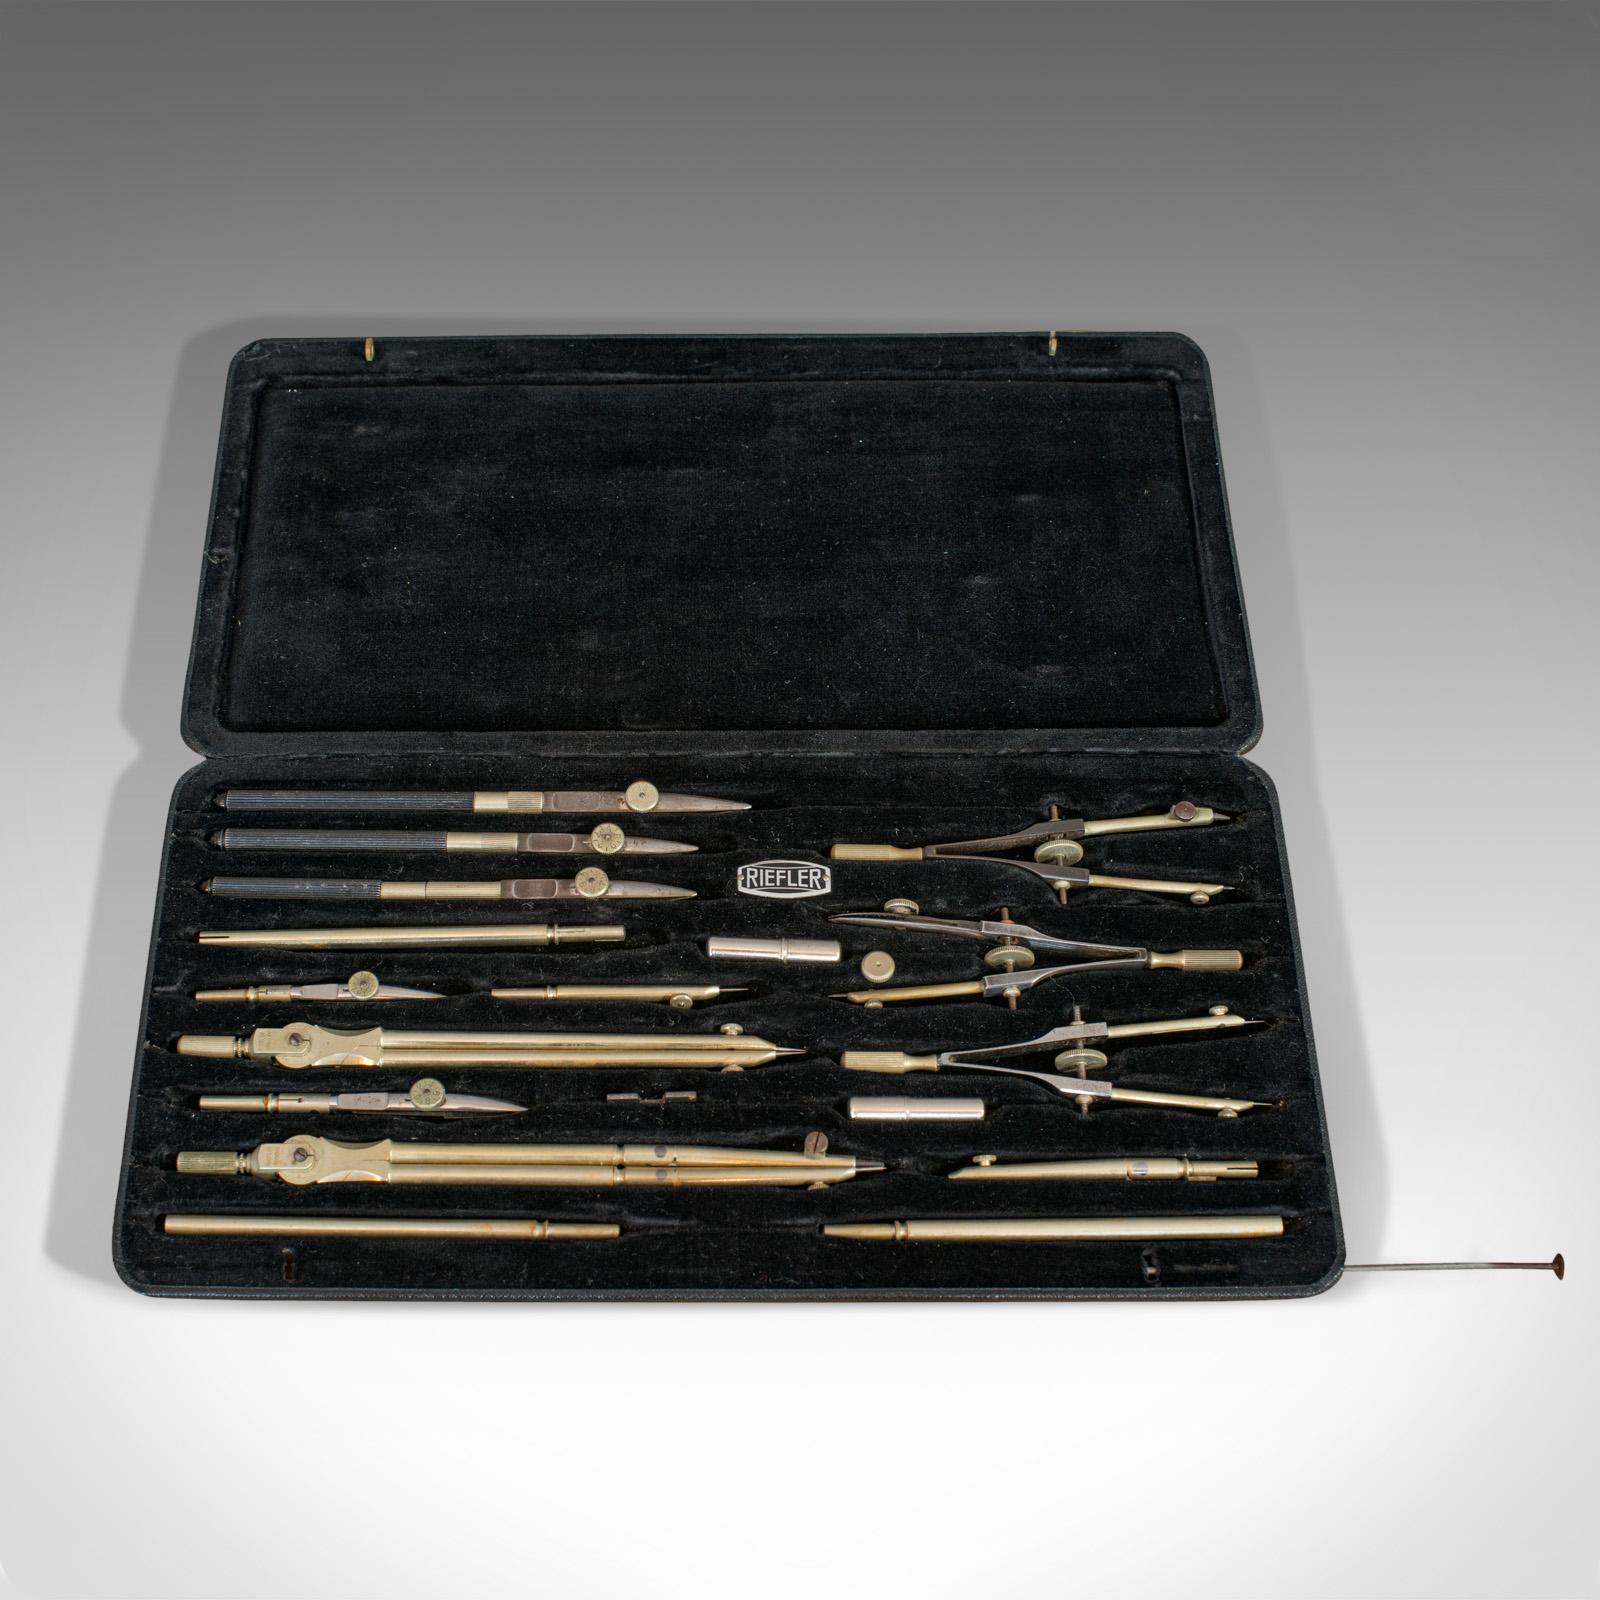 Il s'agit d'un set de dessinateur d'époque. Set d'instruments de dessin allemand en maillechort par CIRCA, datant du milieu du 20e siècle, vers 1950.

Jeu d'instruments de dix-neuf pièces
Présente une patine vieillie très recherchée.
Outils en